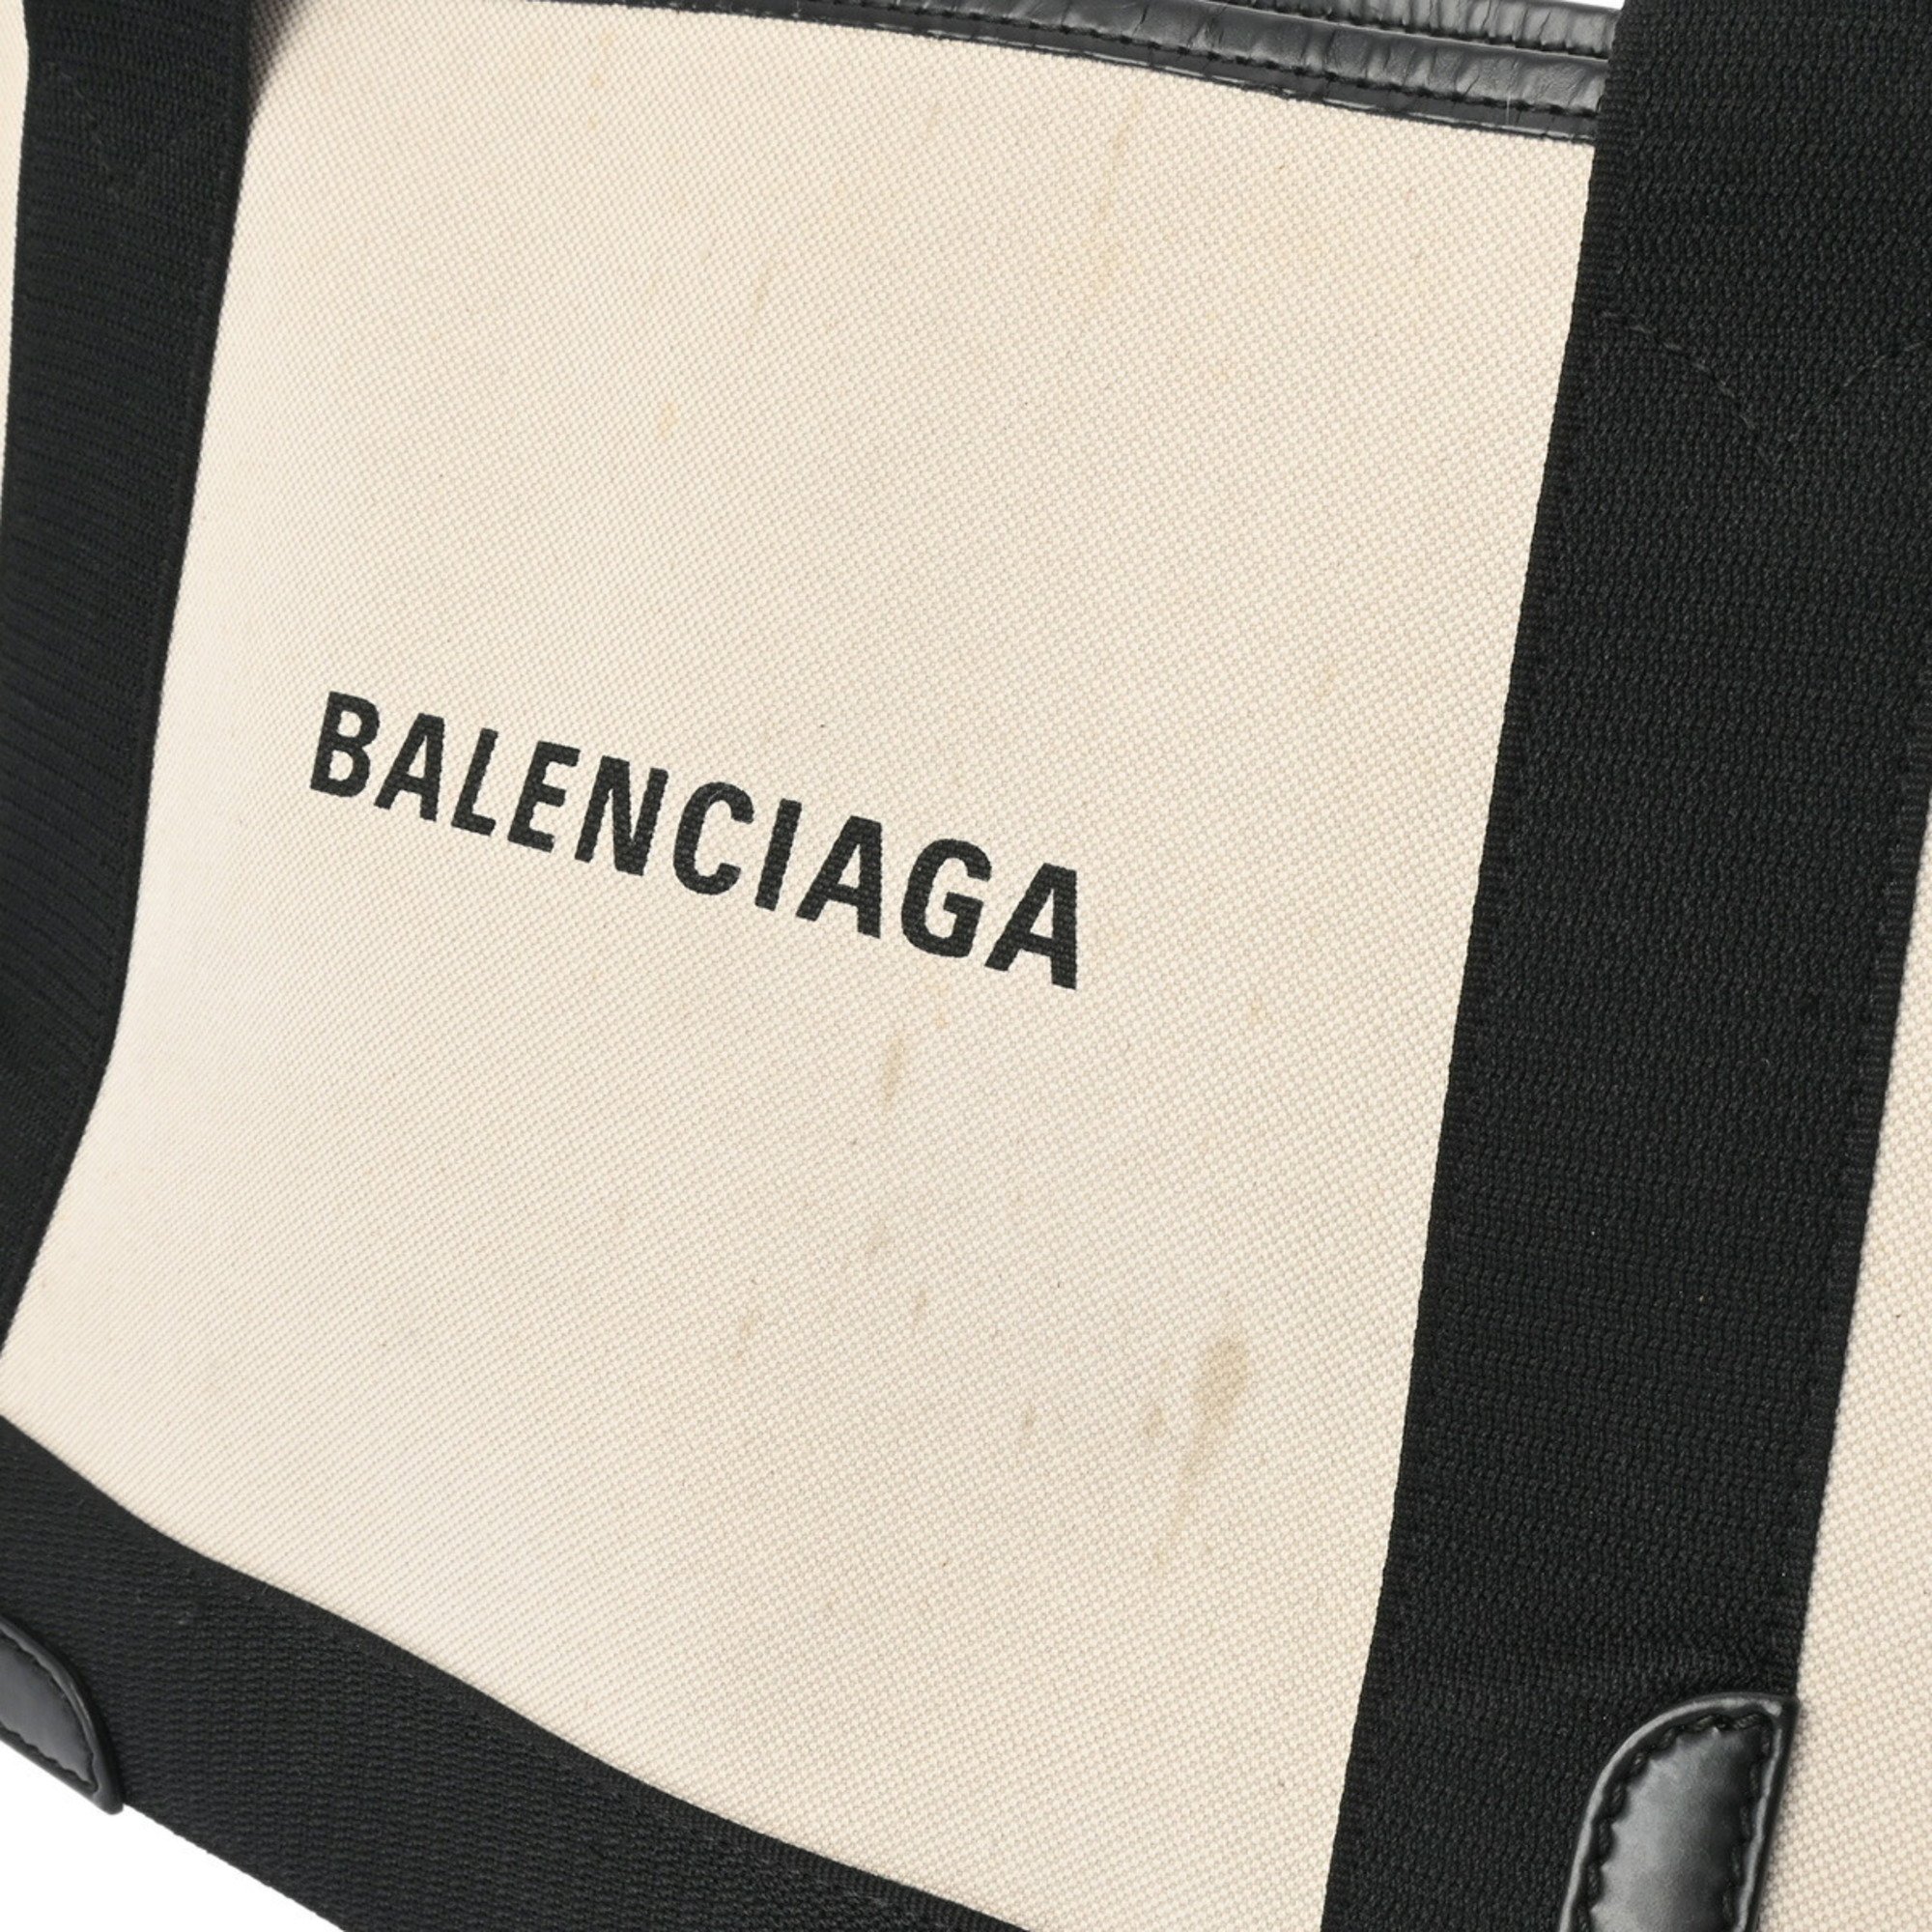 BALENCIAGA Navy Cabas XS Natural/Black 339933 Women's Canvas Handbag